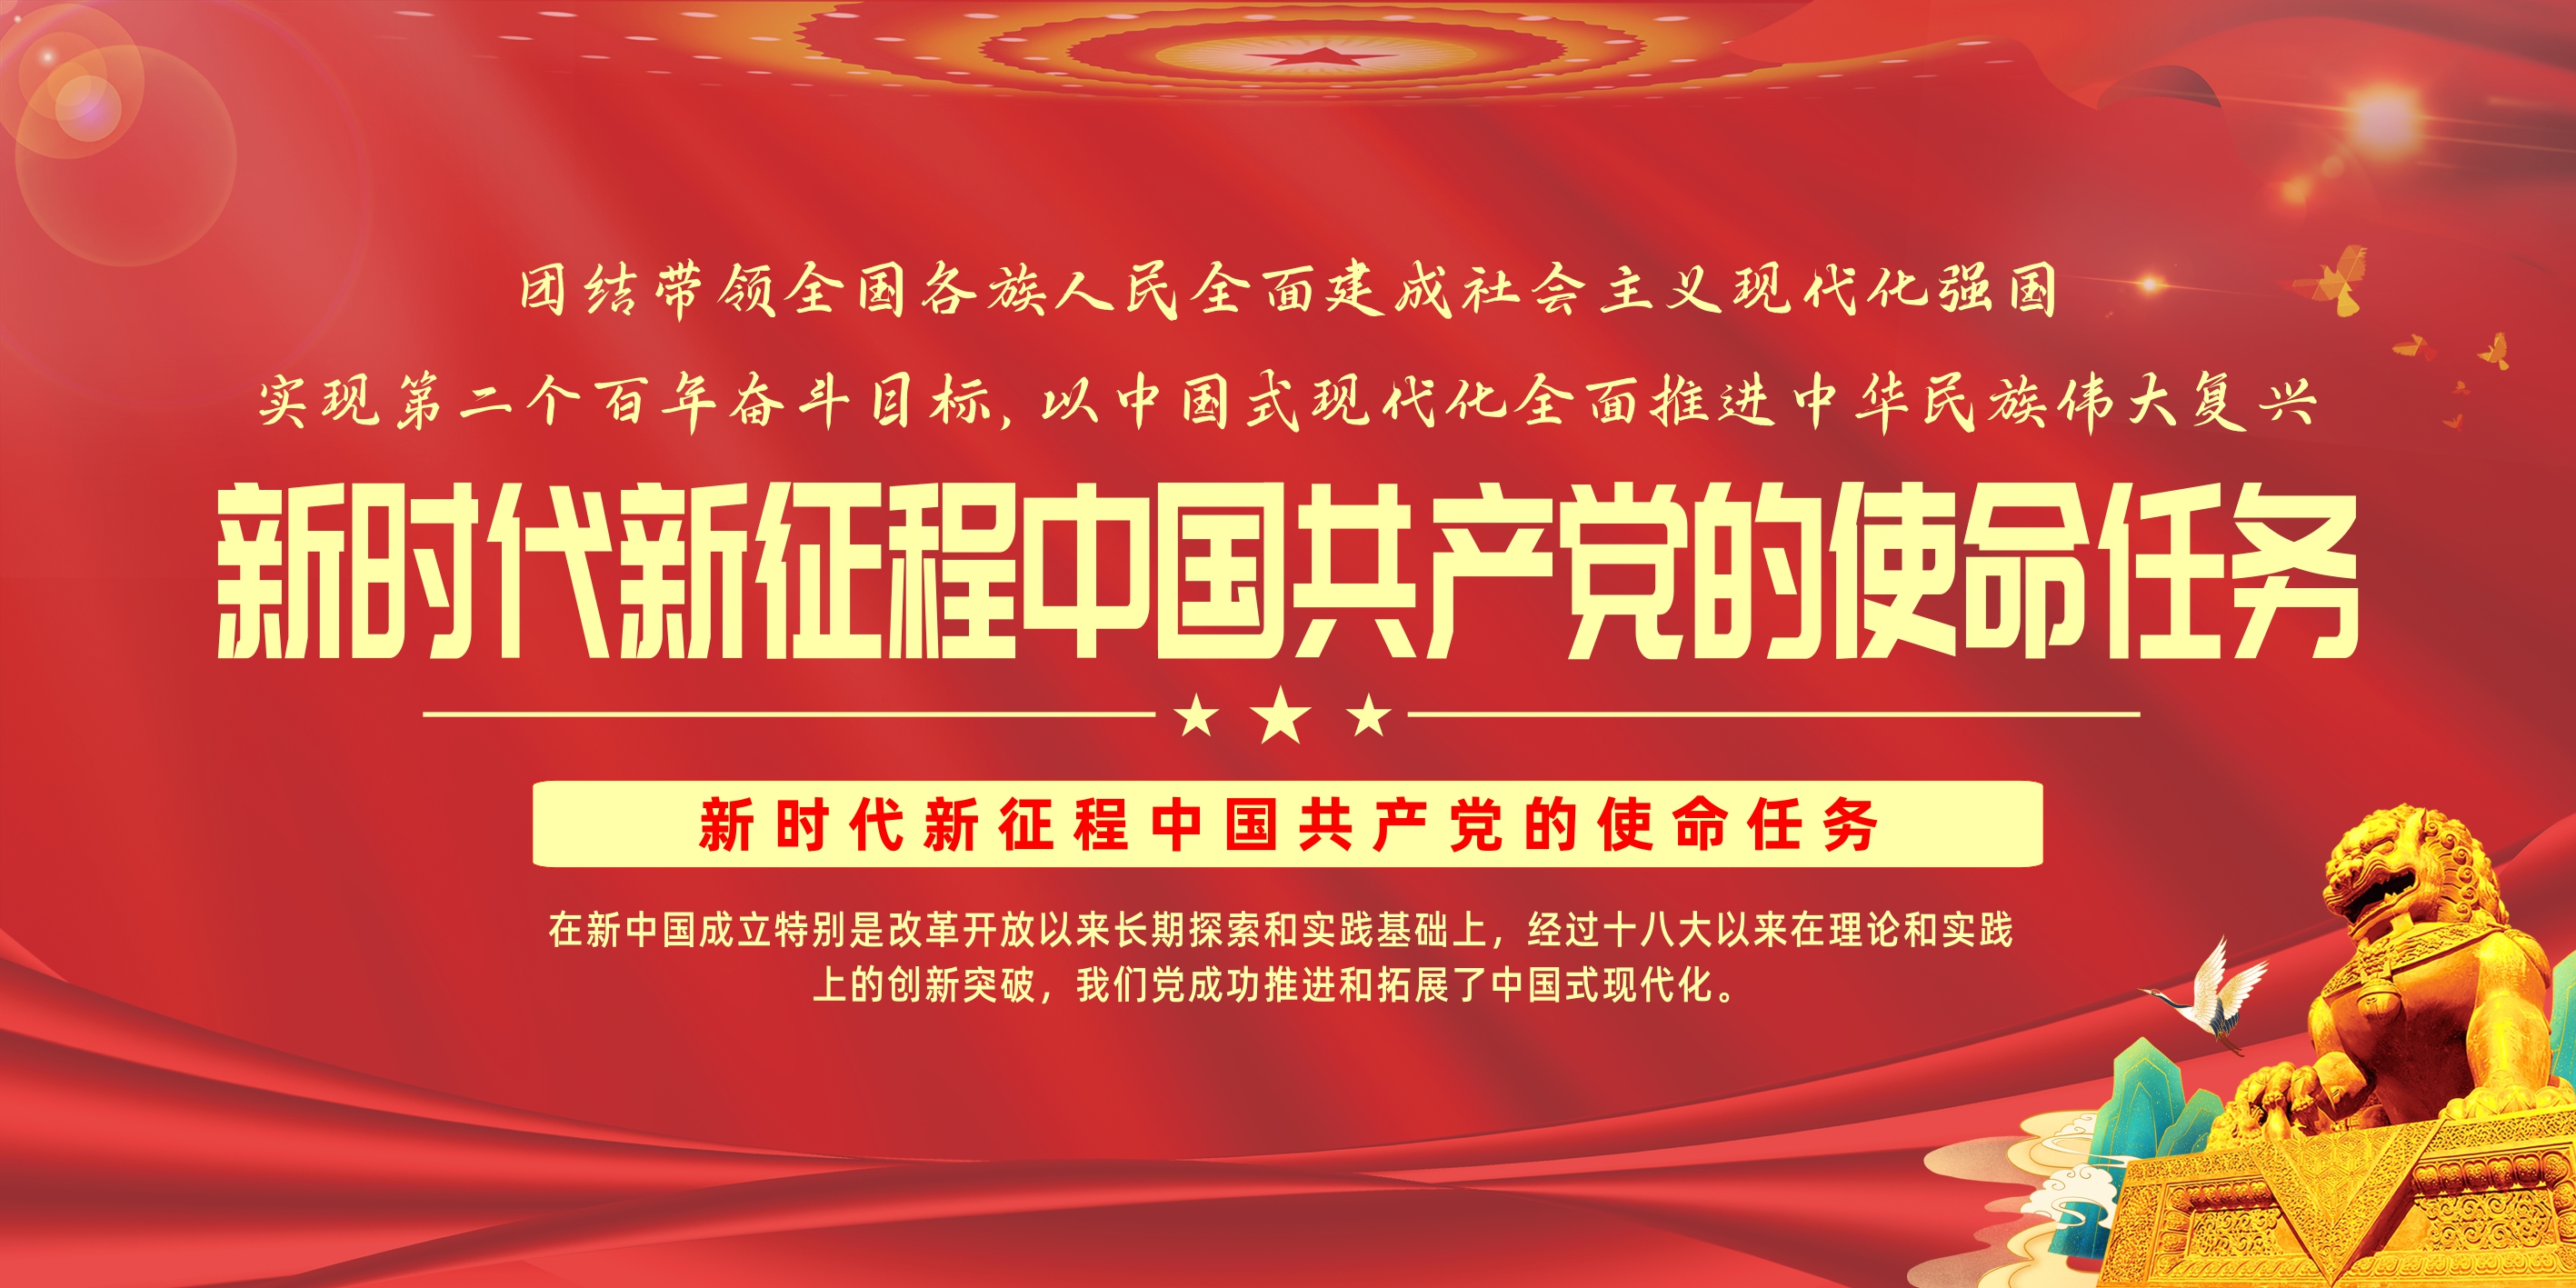 新时代新征程中国共产党的使命任务党建展板